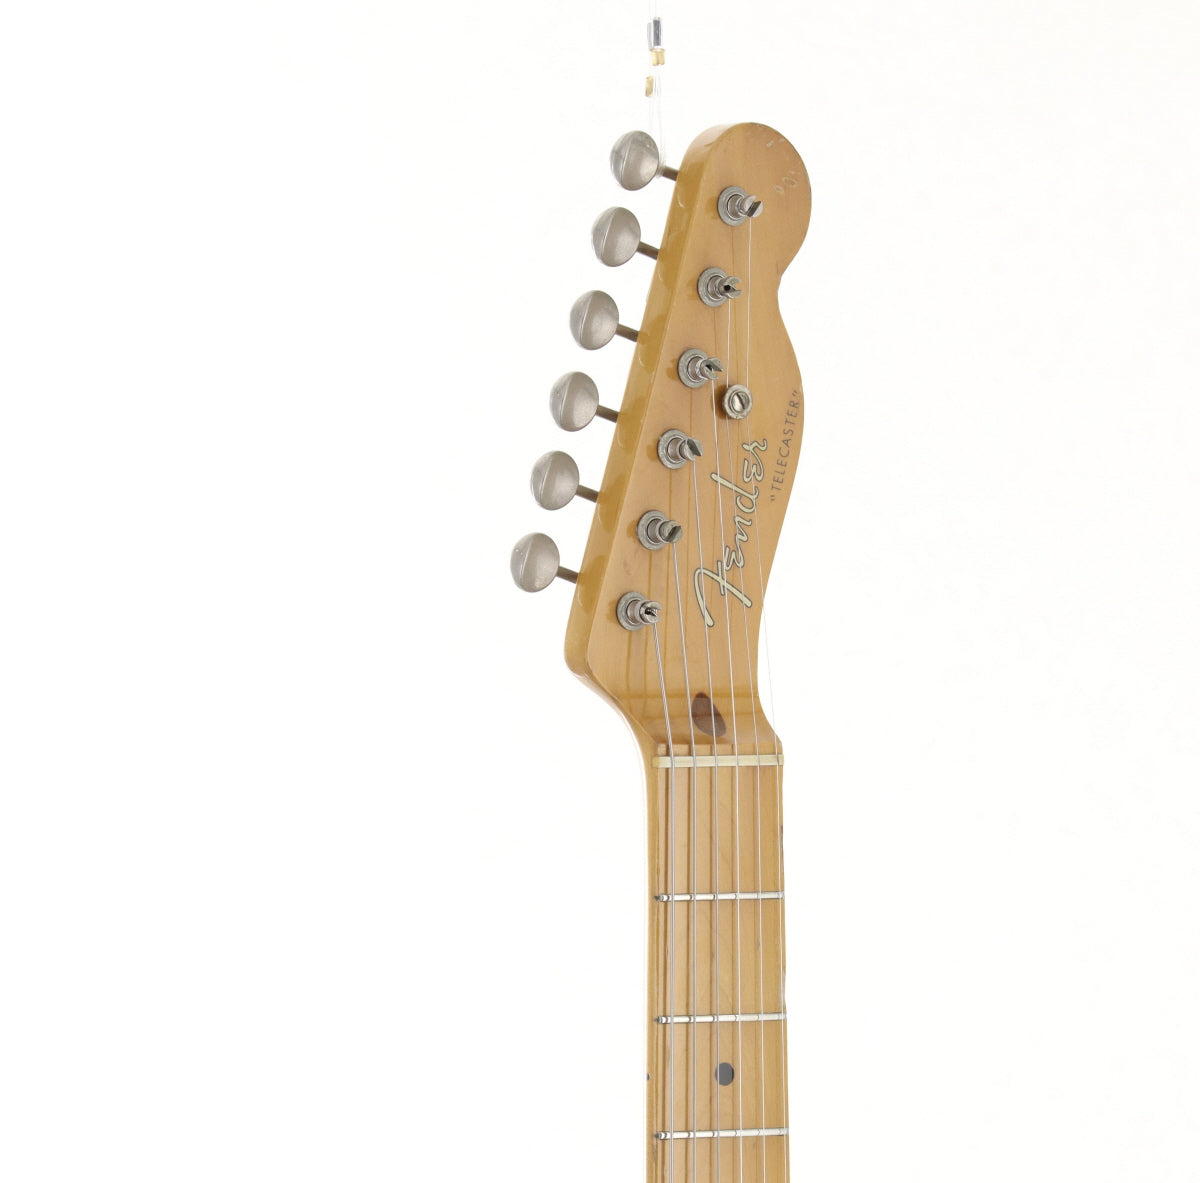 [SN A041026] USED Fender JAPAN / TL52-70 BSB 1985-1986 [09]